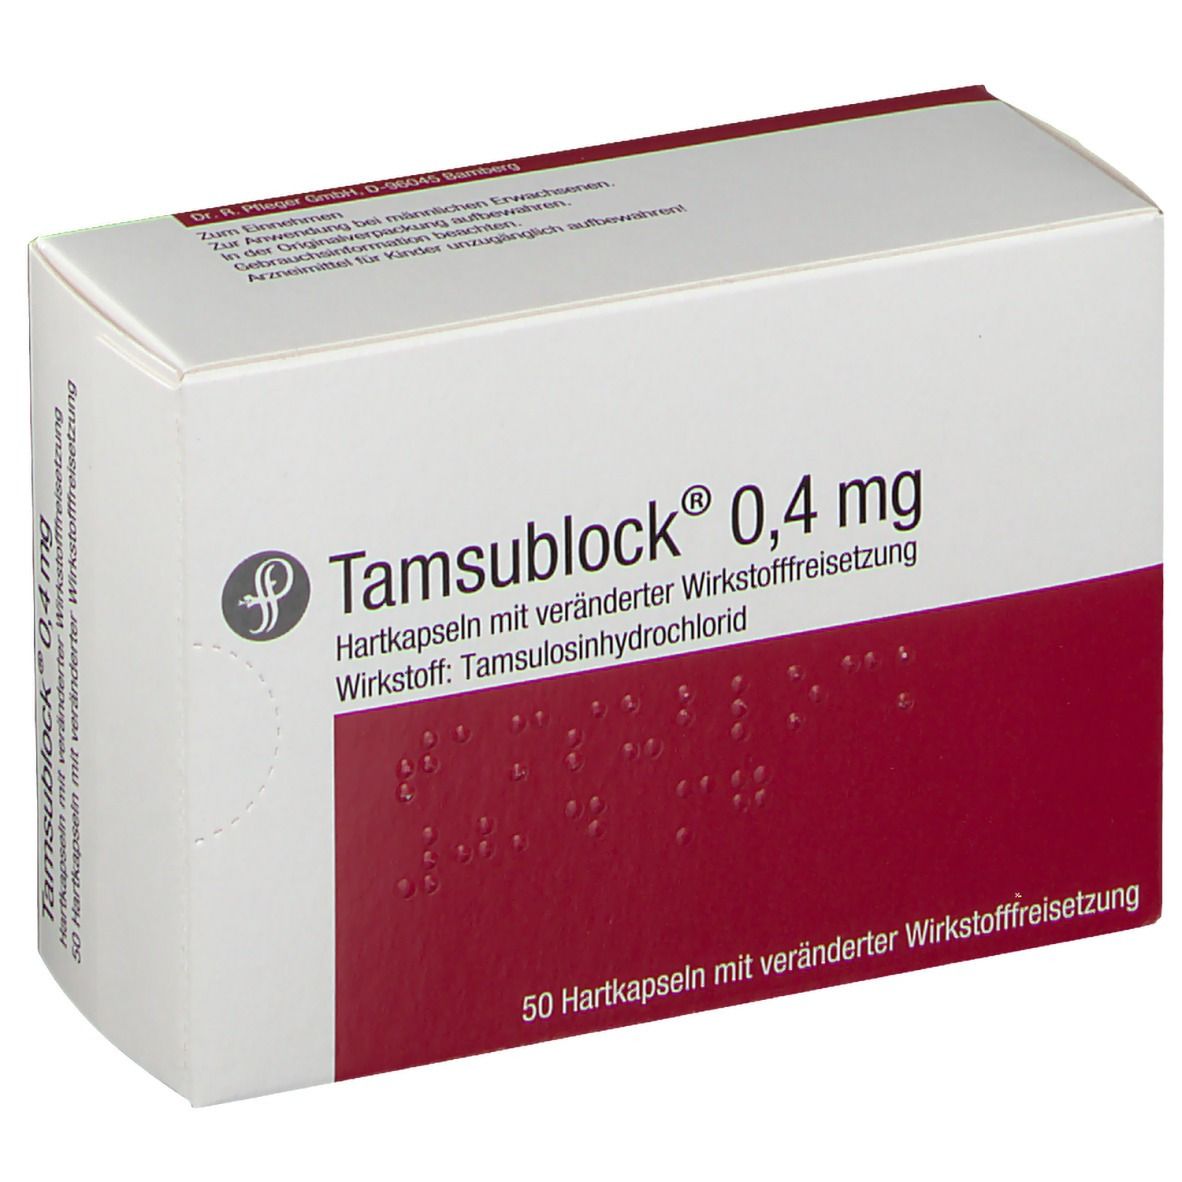 Tamsublock® 0,4 mg